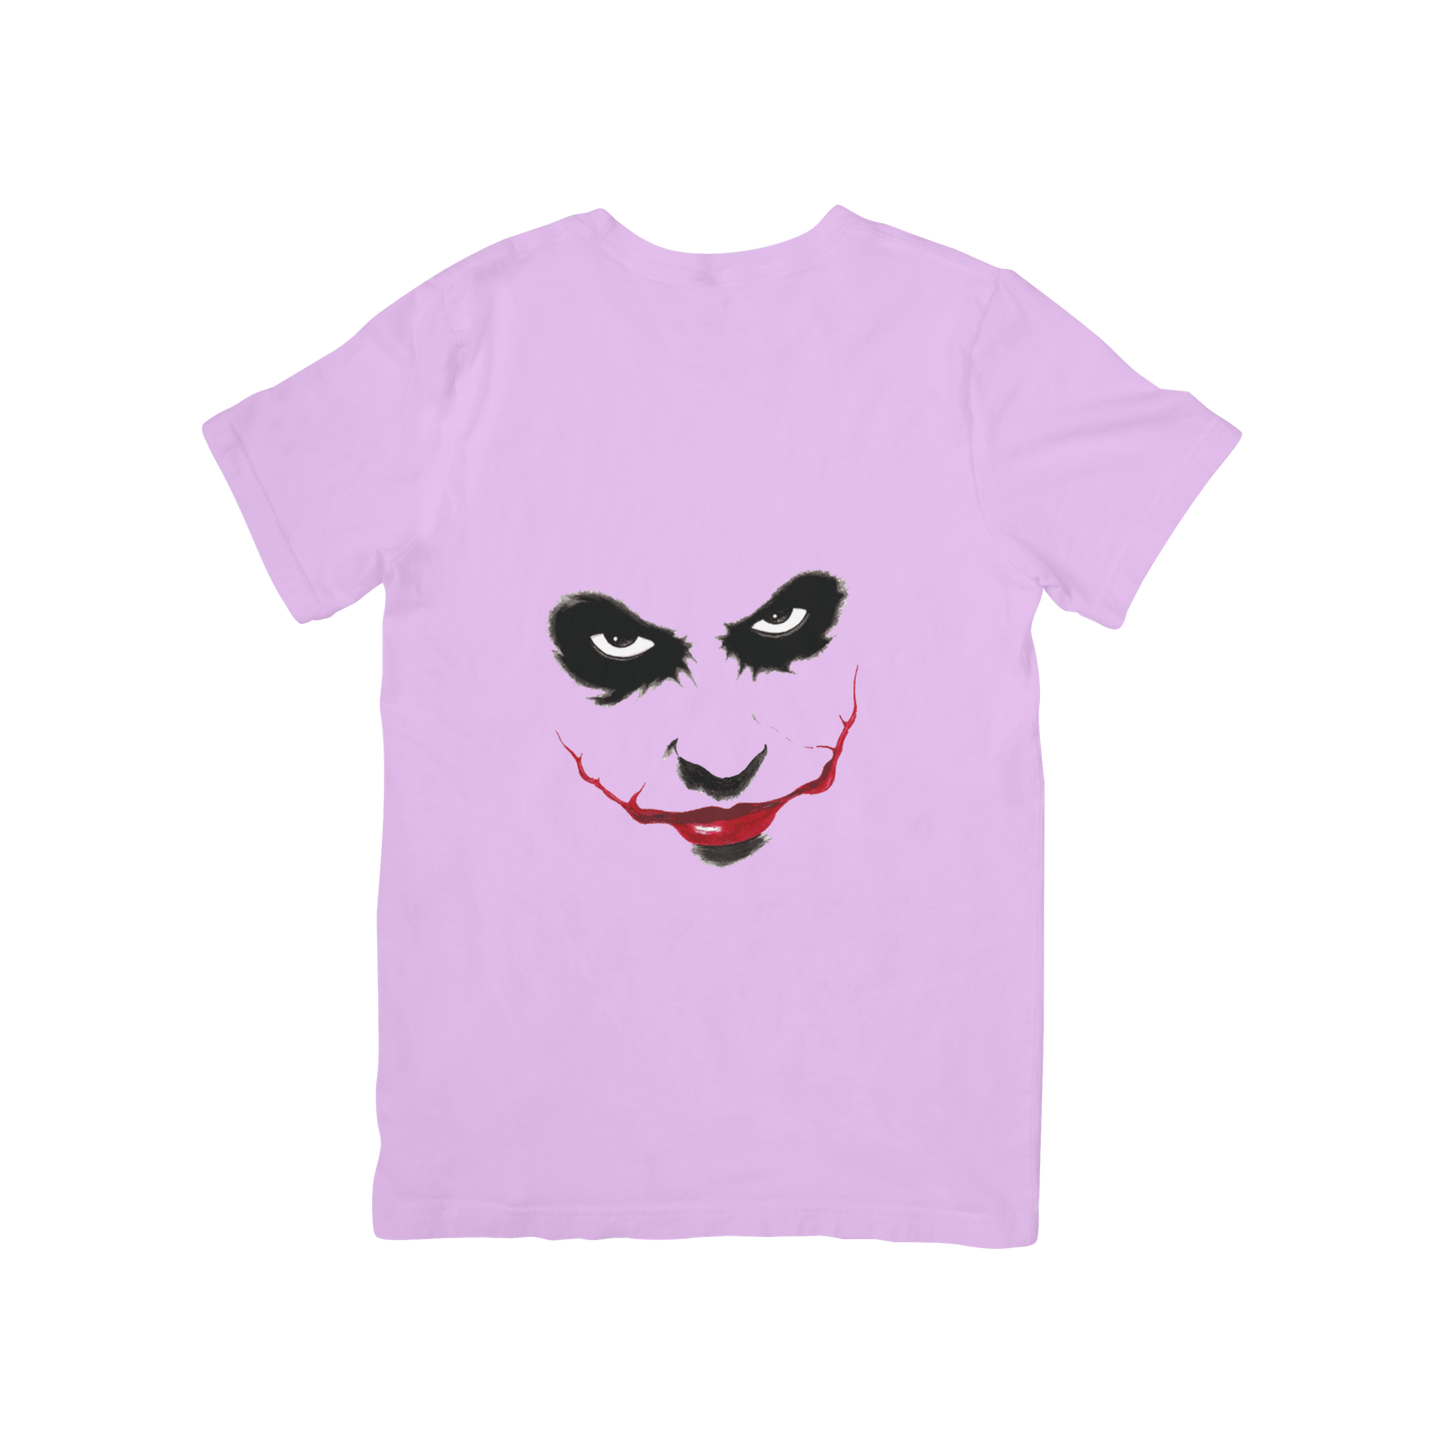 Joker Design T-shirt